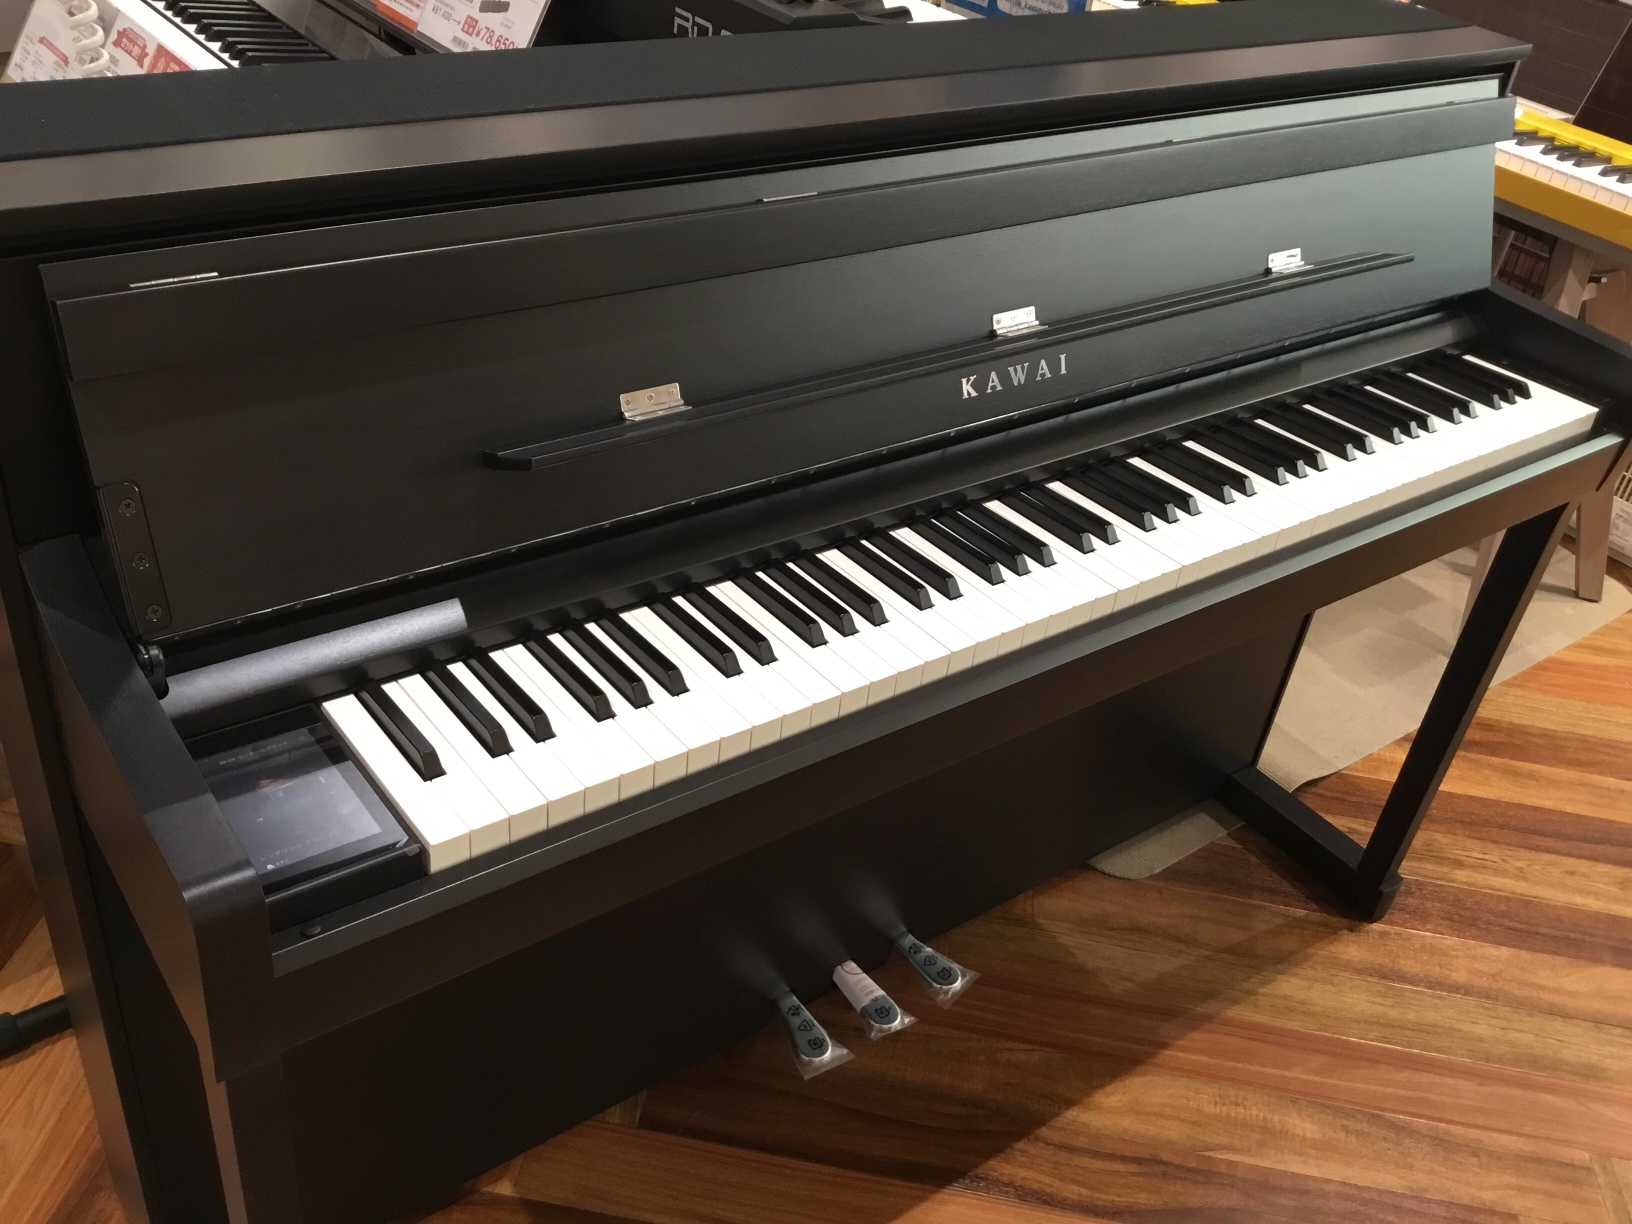 CONTENTSKAWAI　SCA901島村楽器かわぐちキャスティ店電子ピアノ展示ラインナップお問い合わせKAWAI　SCA901 88鍵全て木製鍵盤、響板スピーカー搭載、シーソー構造採用の本格派電子ピアノ「CA9900GP」をよりグレードアップしたリニューアルモデル、「SCA901」が発売になりま […]